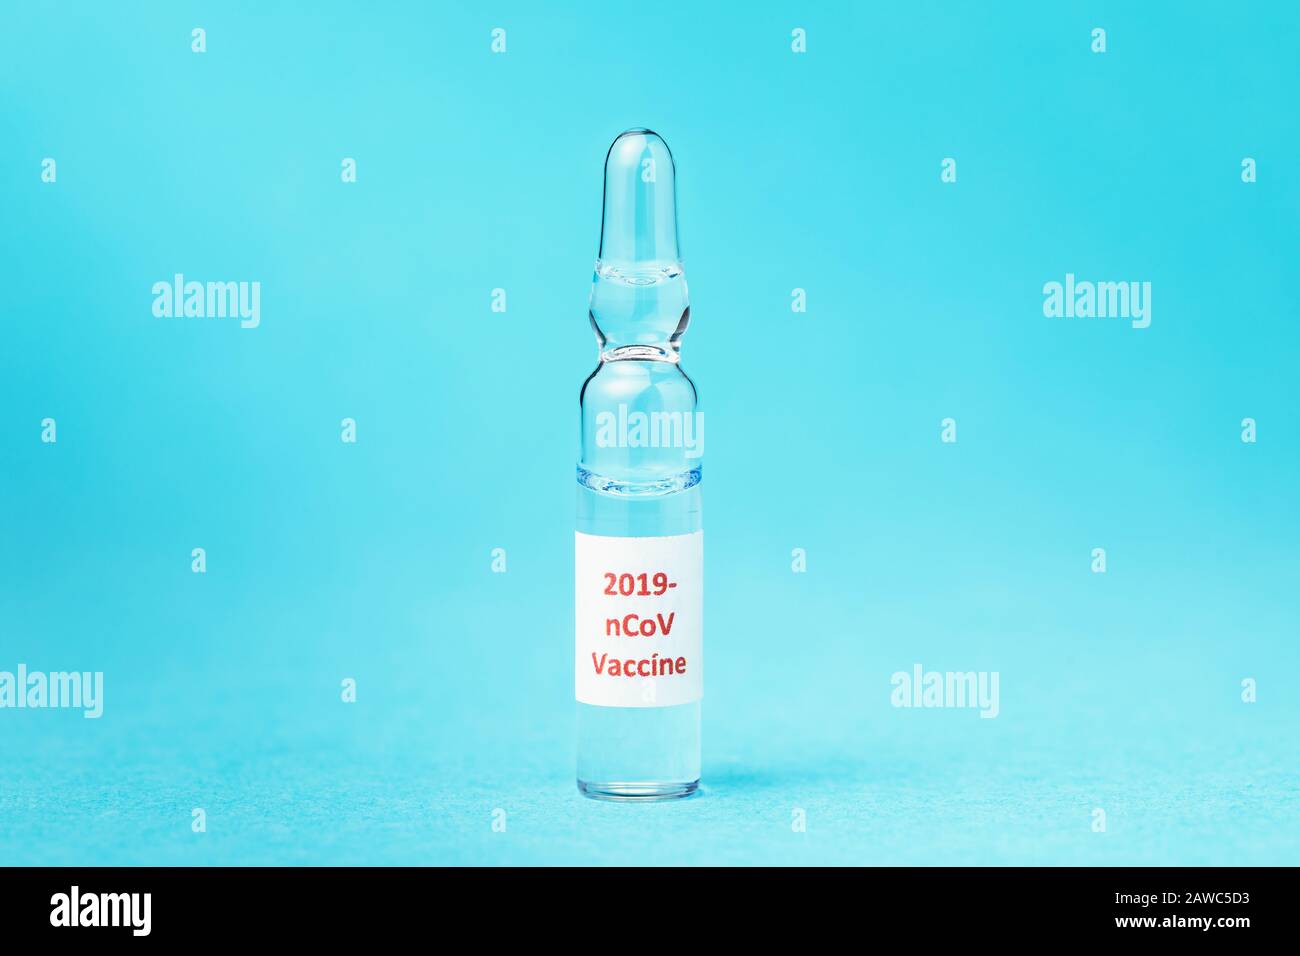 Ampolla de vidrio con vacuna contra nuevo tipo de coronavirus 2019-nCoV sobre fondo azul Foto de stock